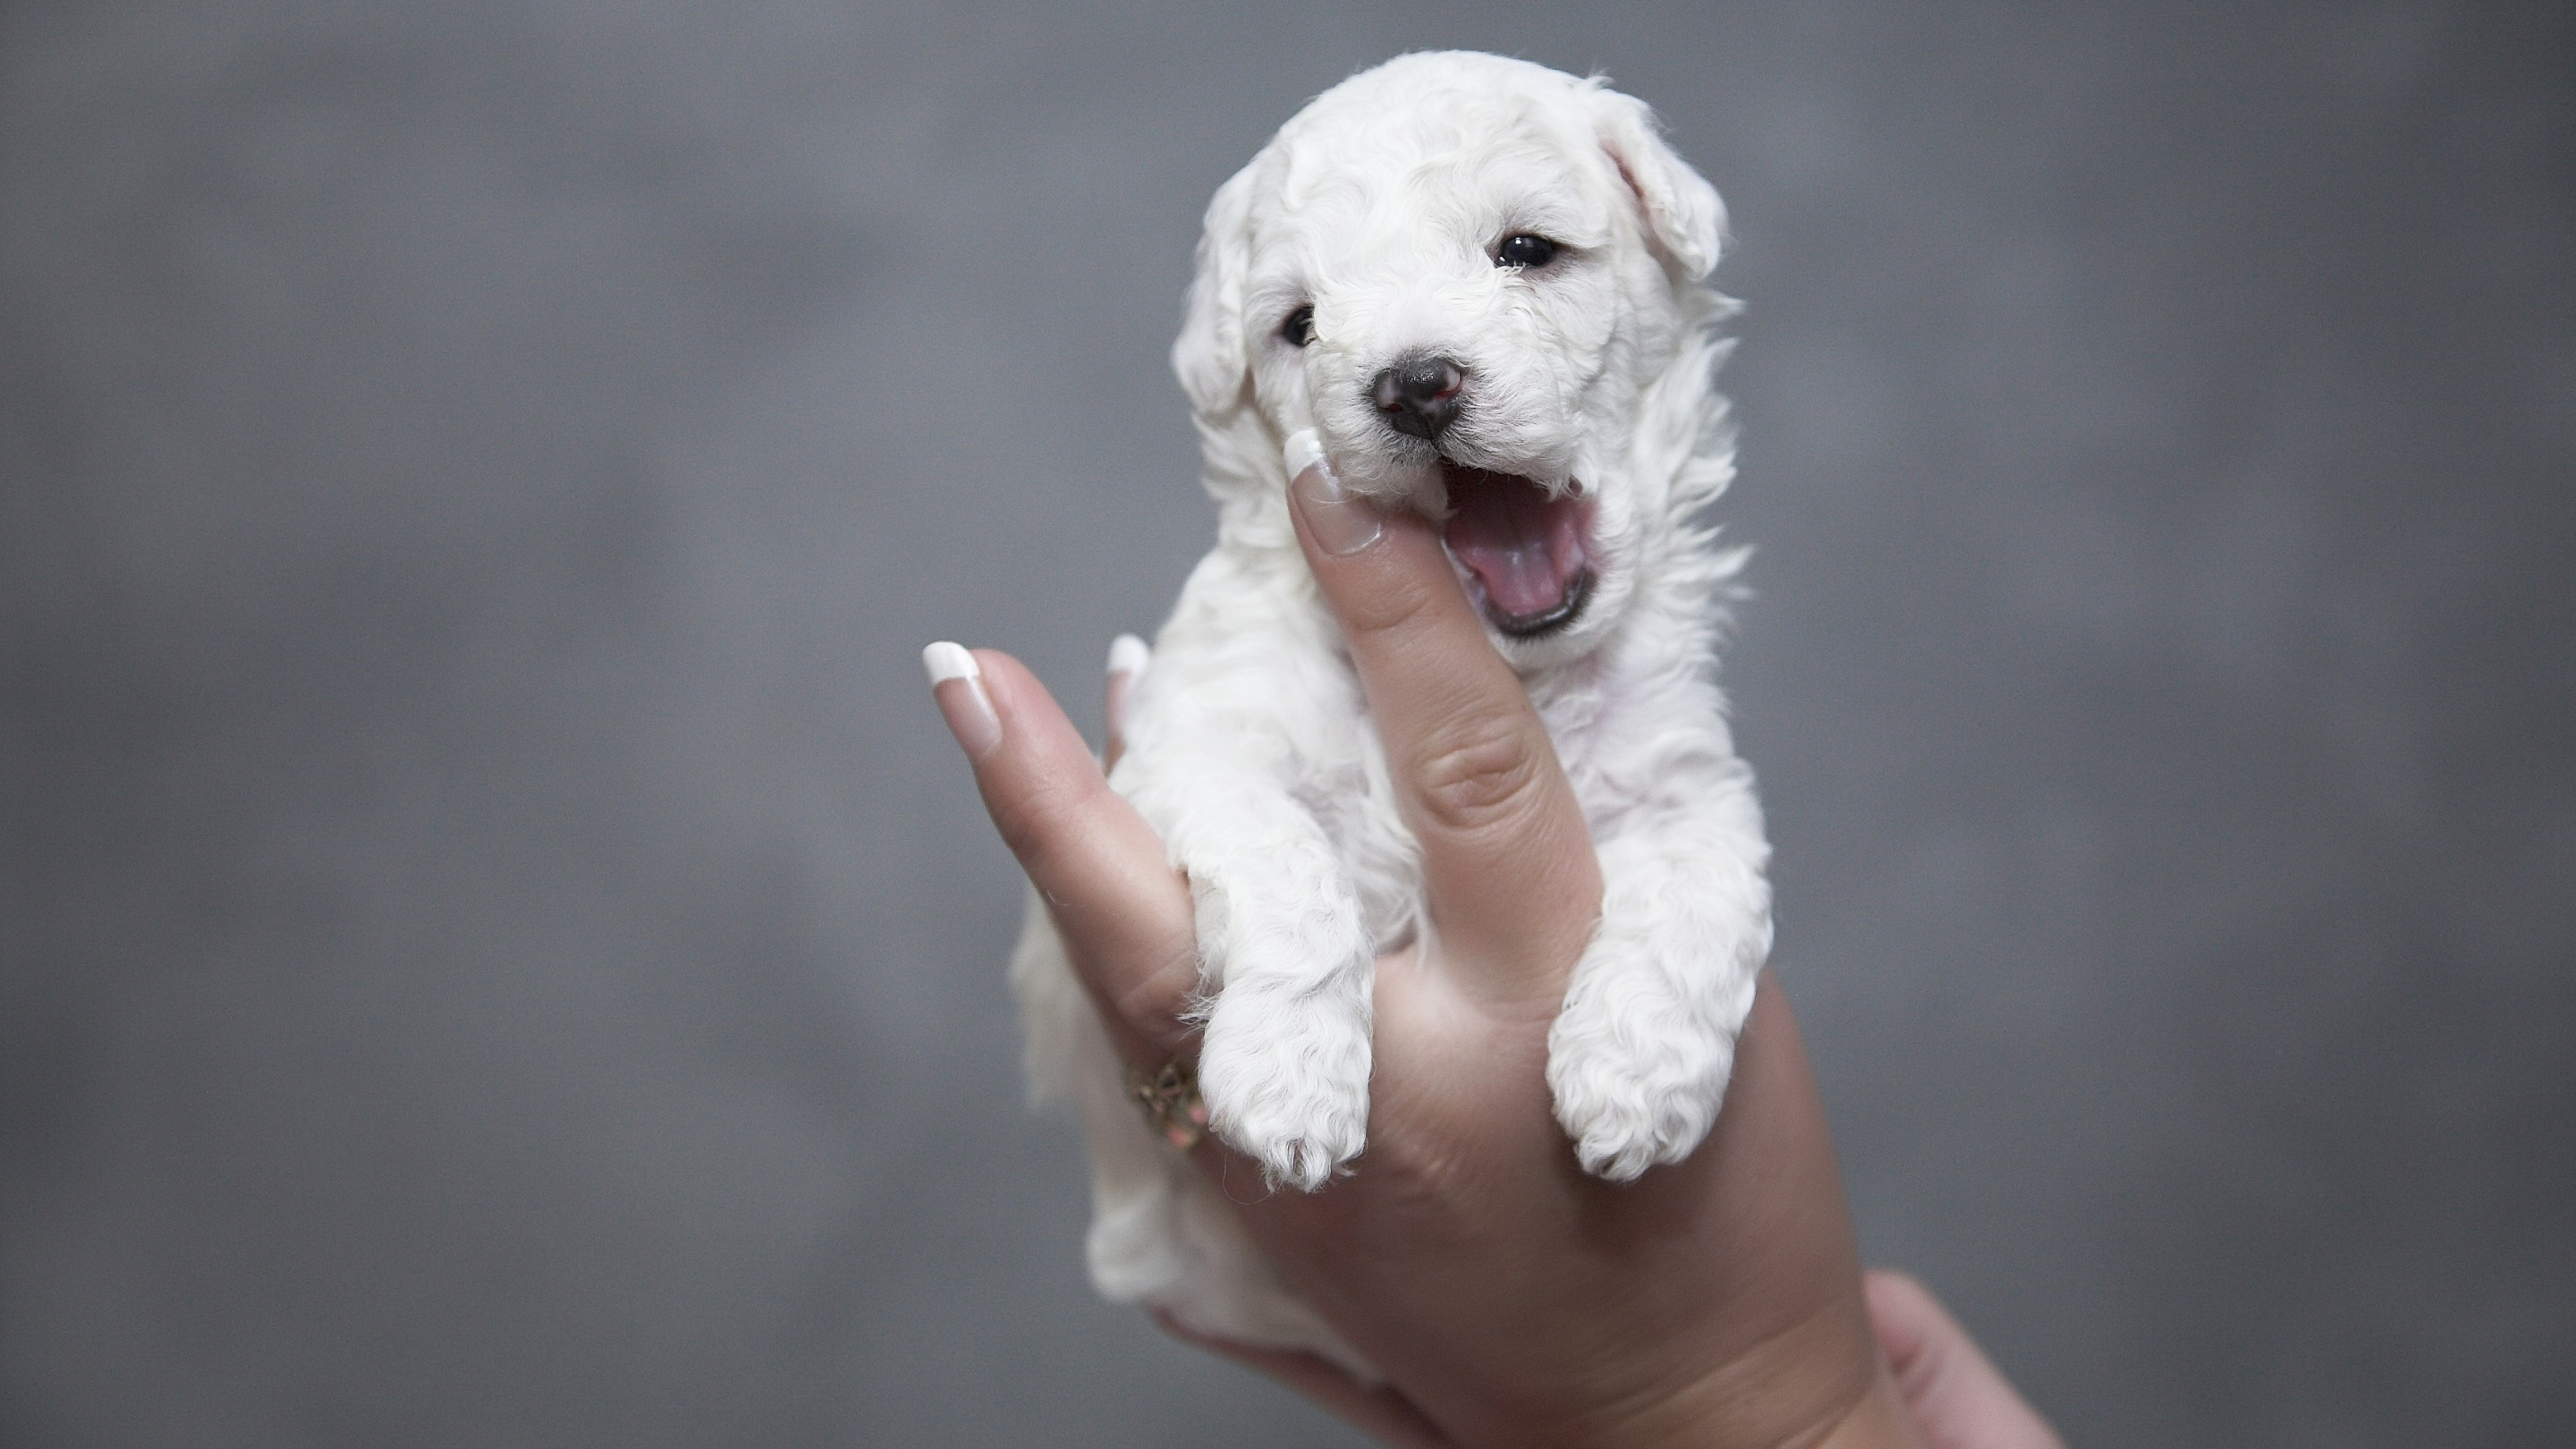 Cutest white puppy wallpaper 2880x1620